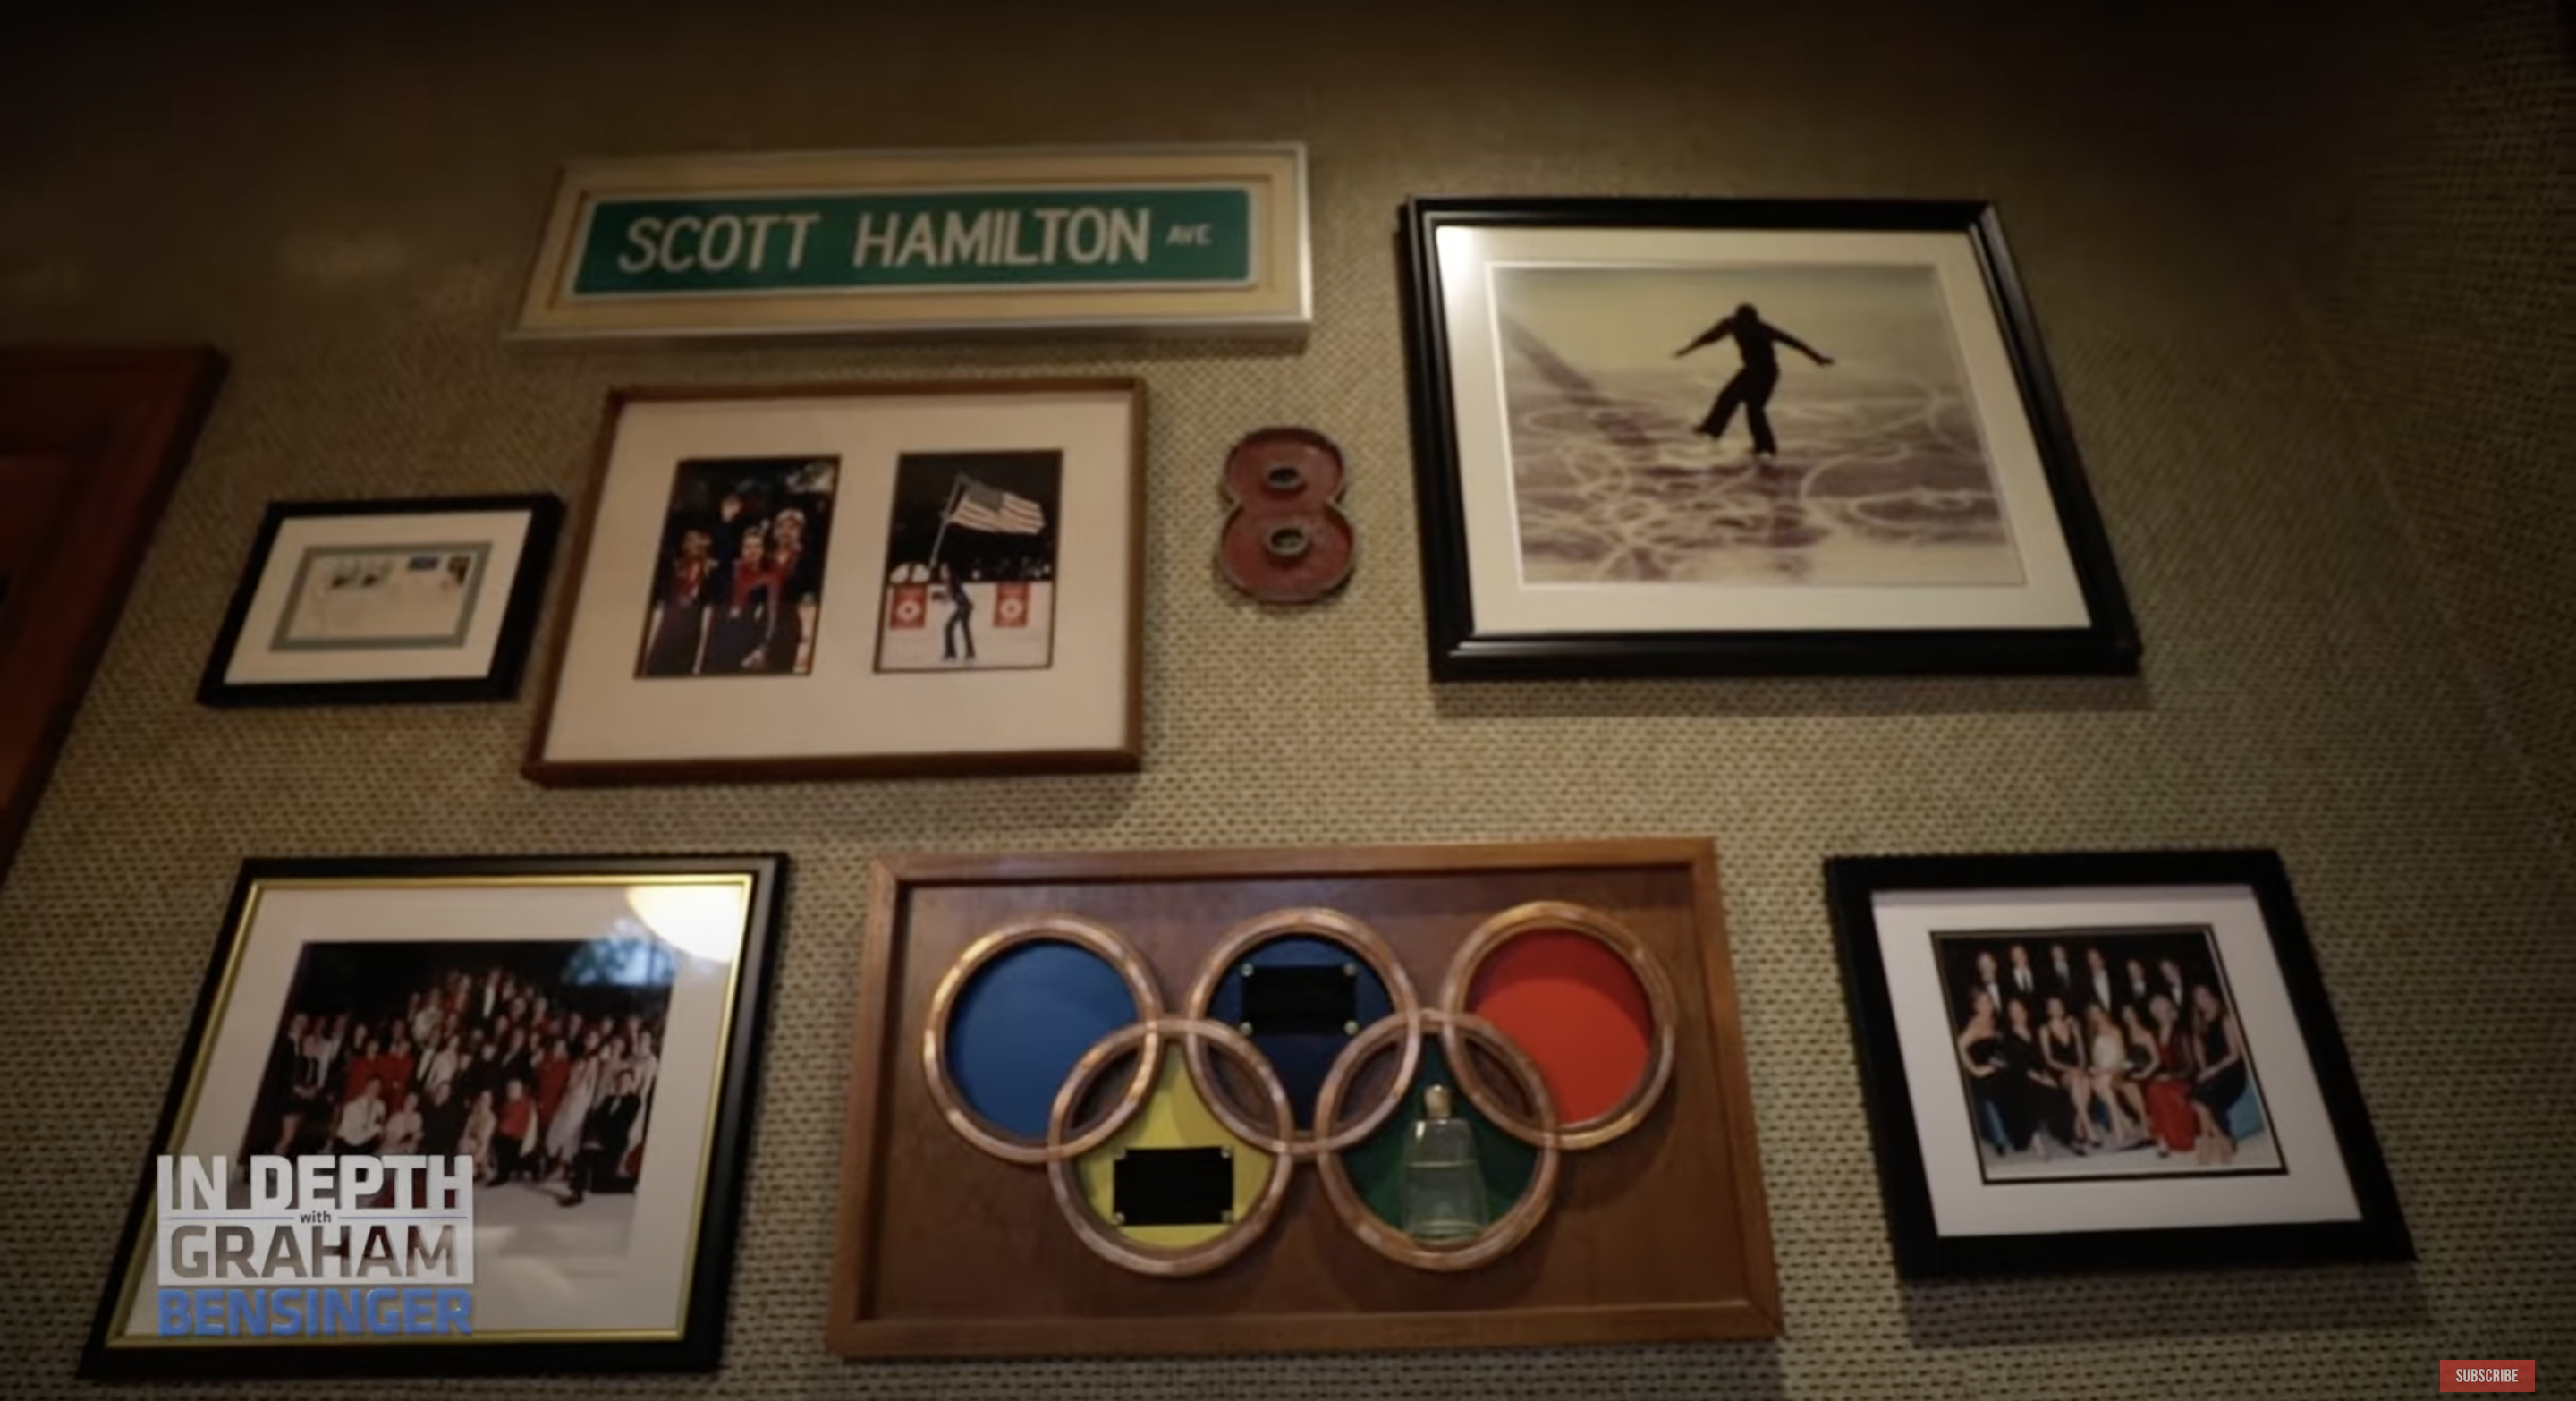 Scott Hamilton's house | Source: youtube.com/@GrahamBensinger